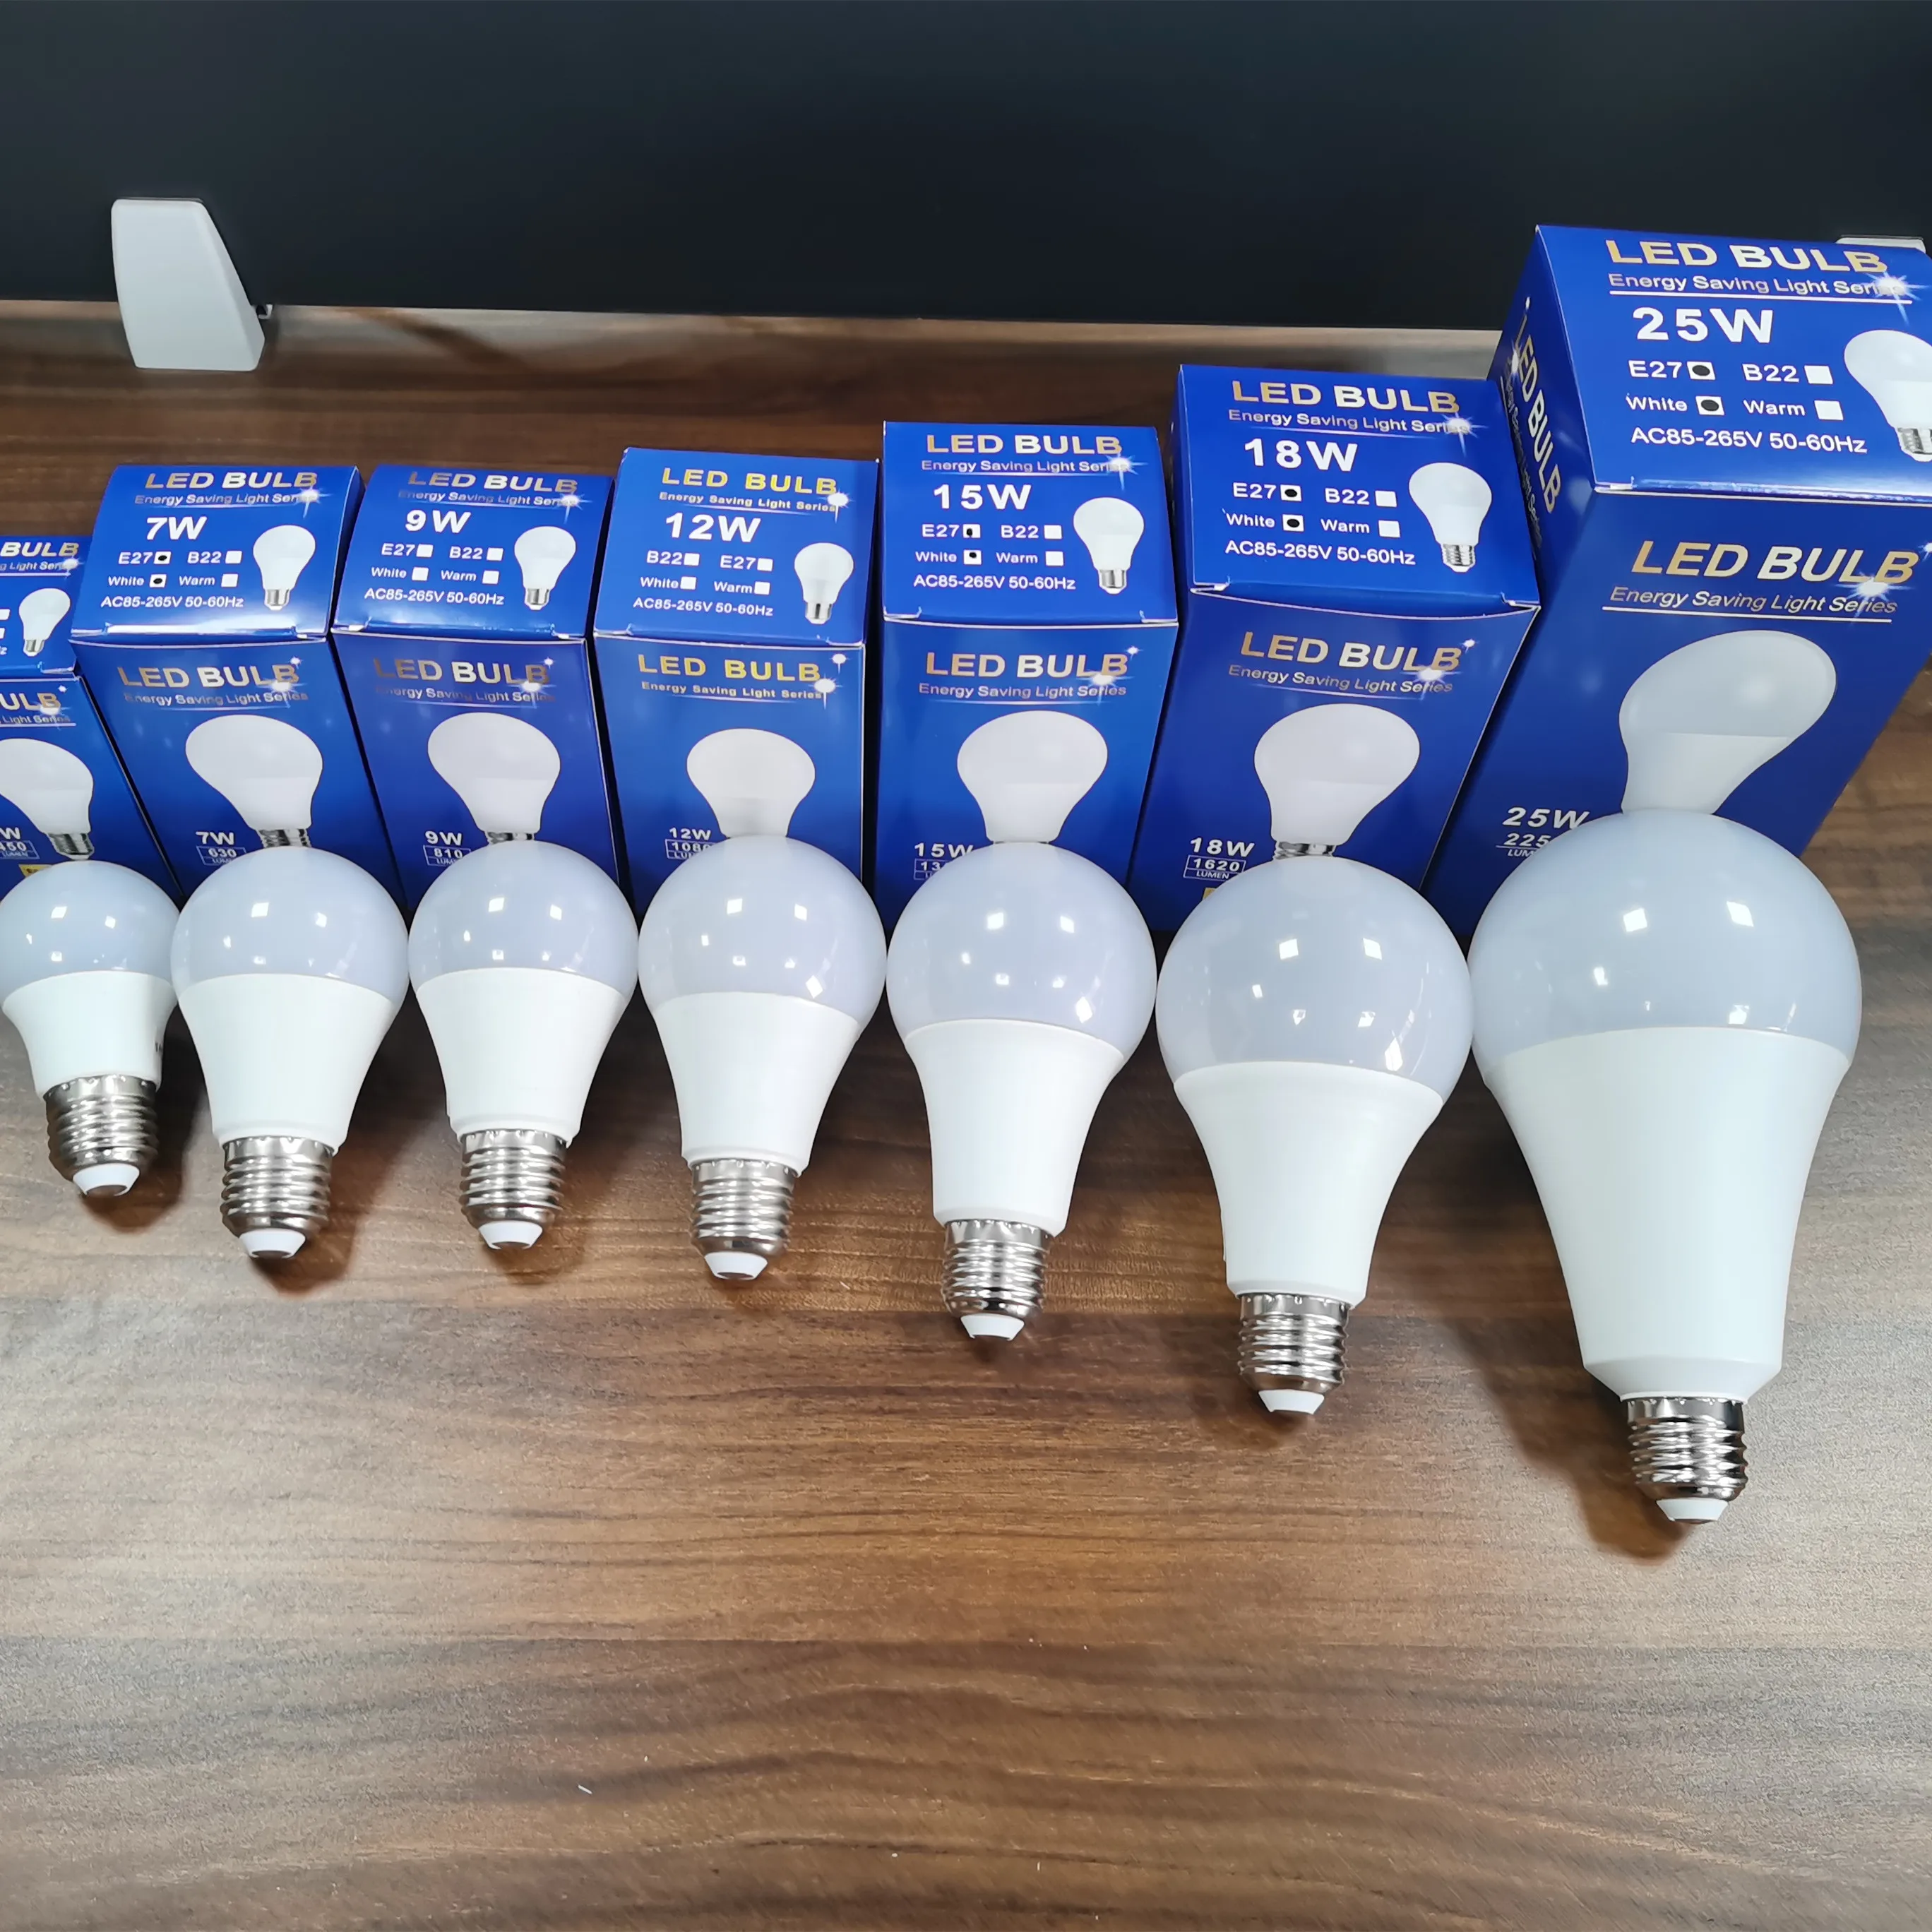 3w 6w 9w 12w 18w 20w Led Bulb Lamps E27 E14 Bulb 220v-240v Smart Ic High Brightness Lampada Led Bombillas - Buy Bulb Light,3w 6w 9w 12w 15w 18w